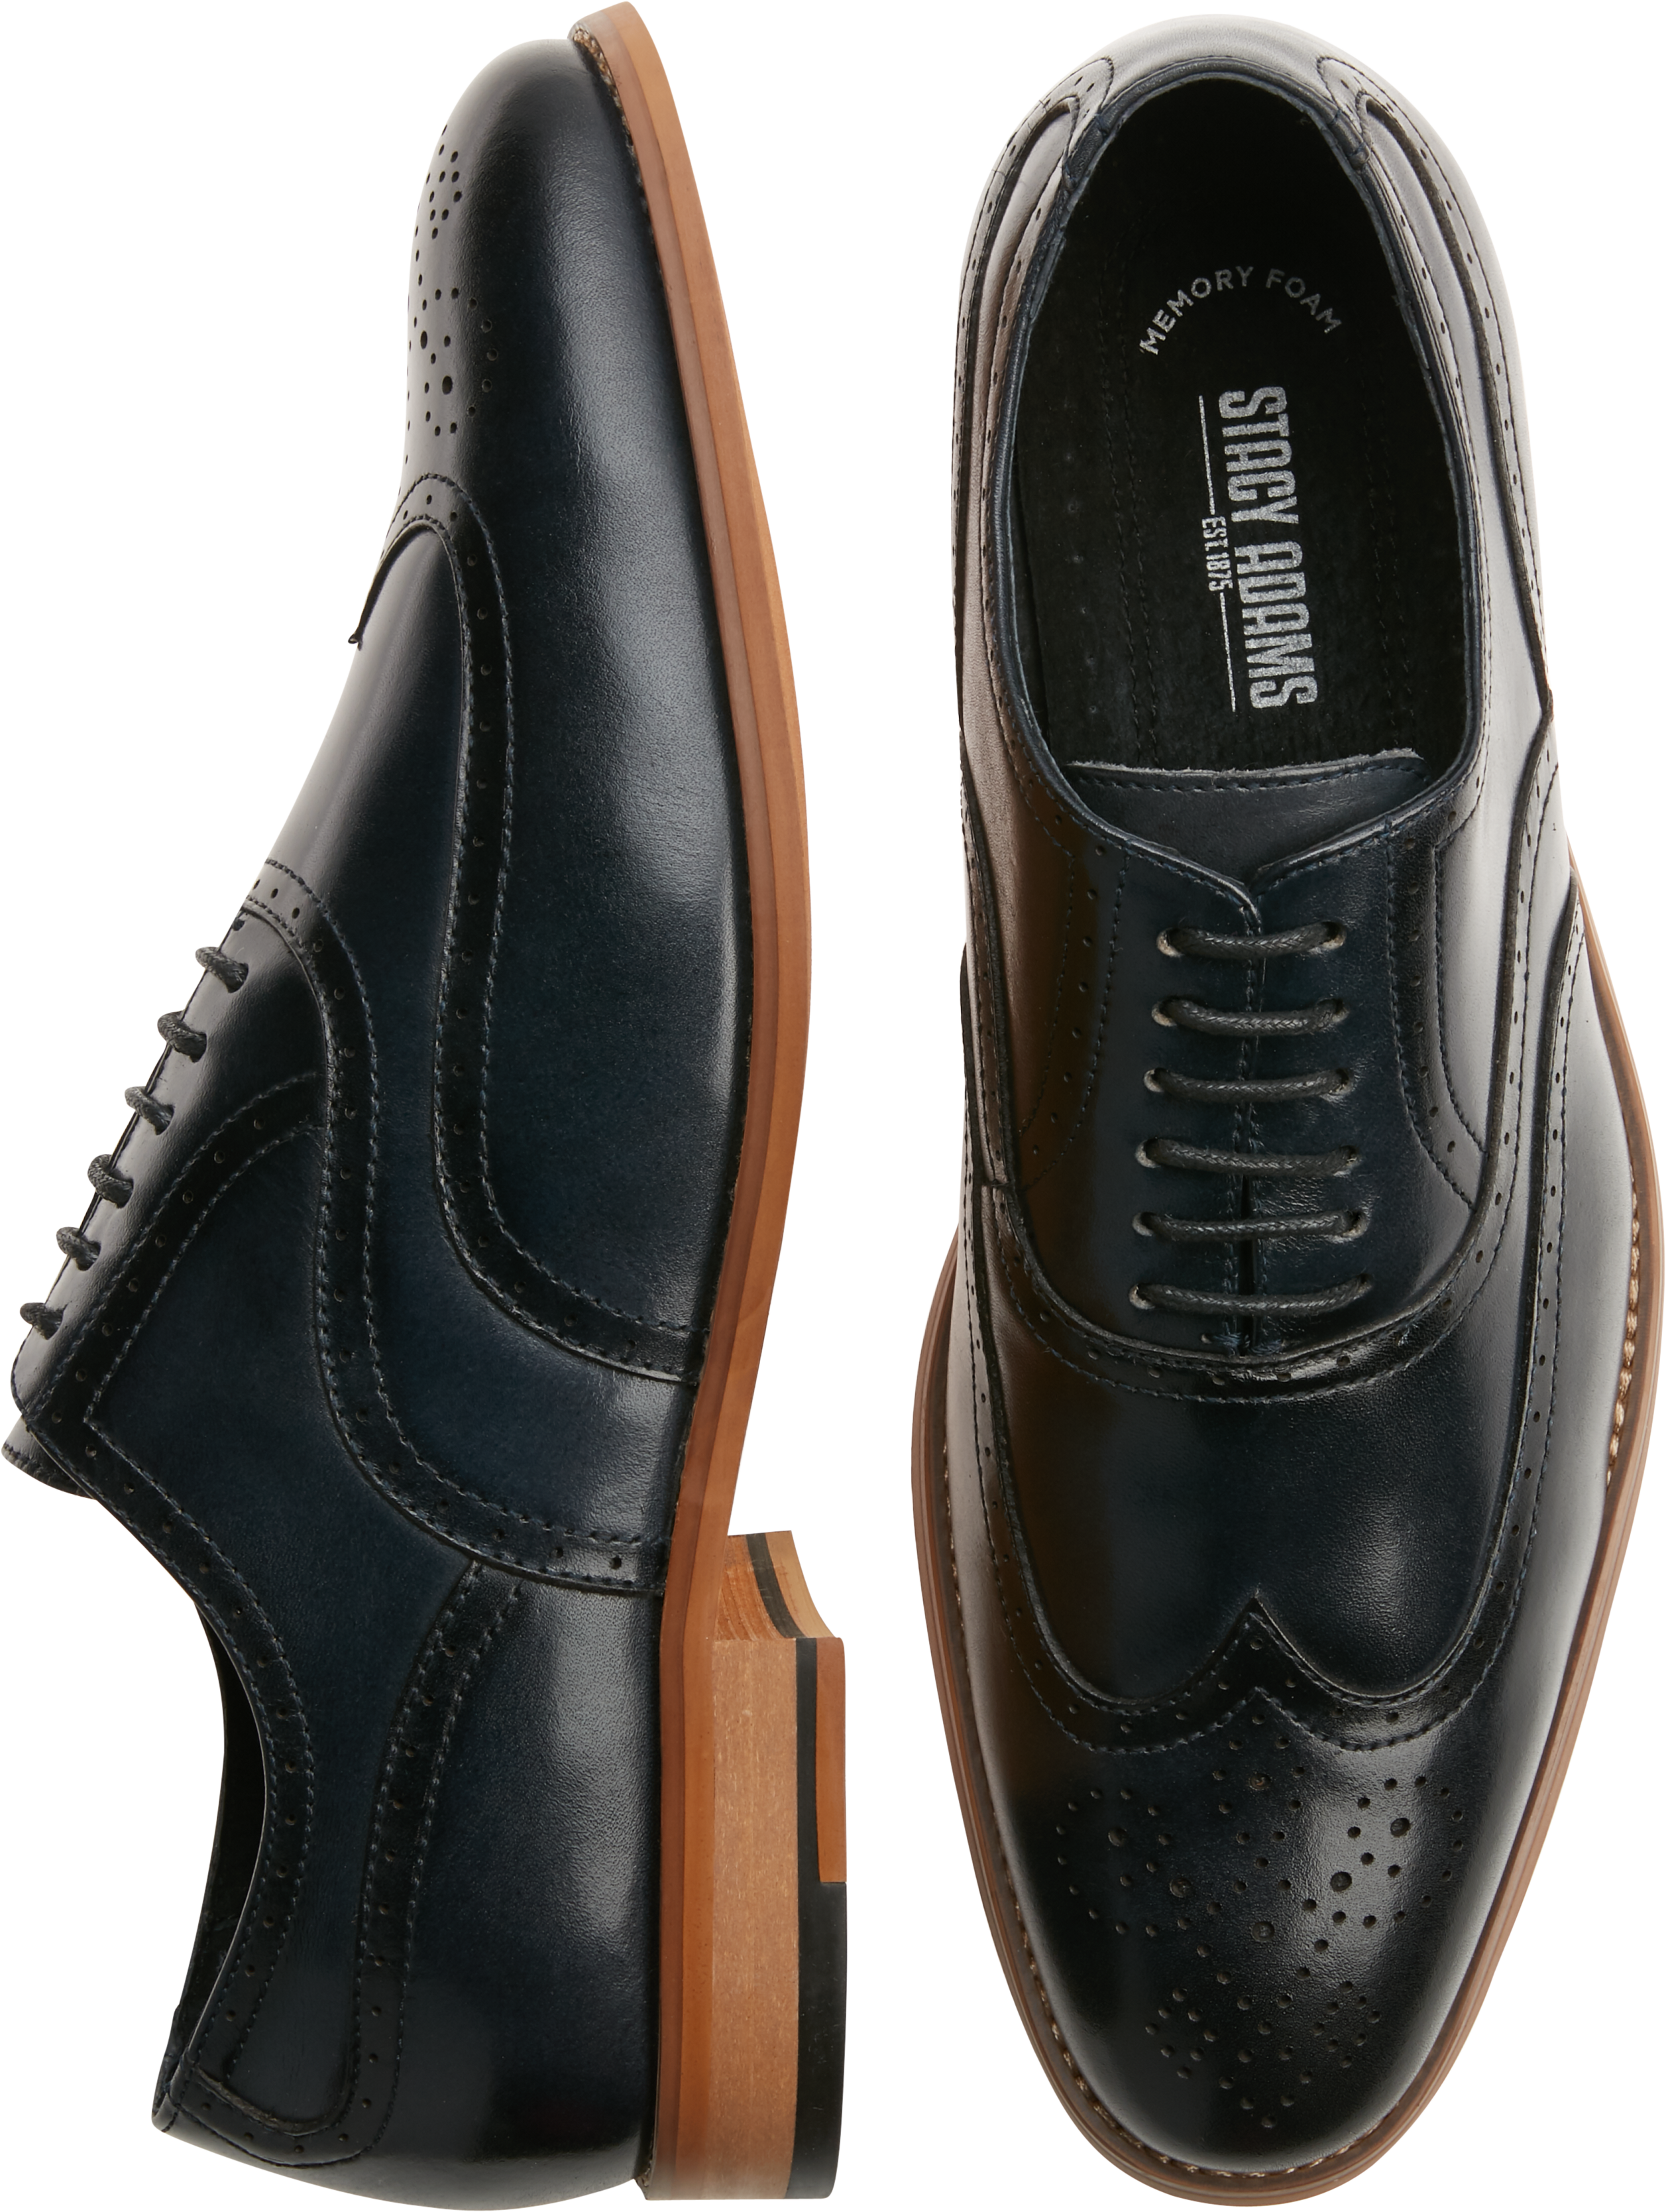 Stacy Adams Dunbar Navy Wingtip Oxfords - Men's Shoes | Men's Wearhouse